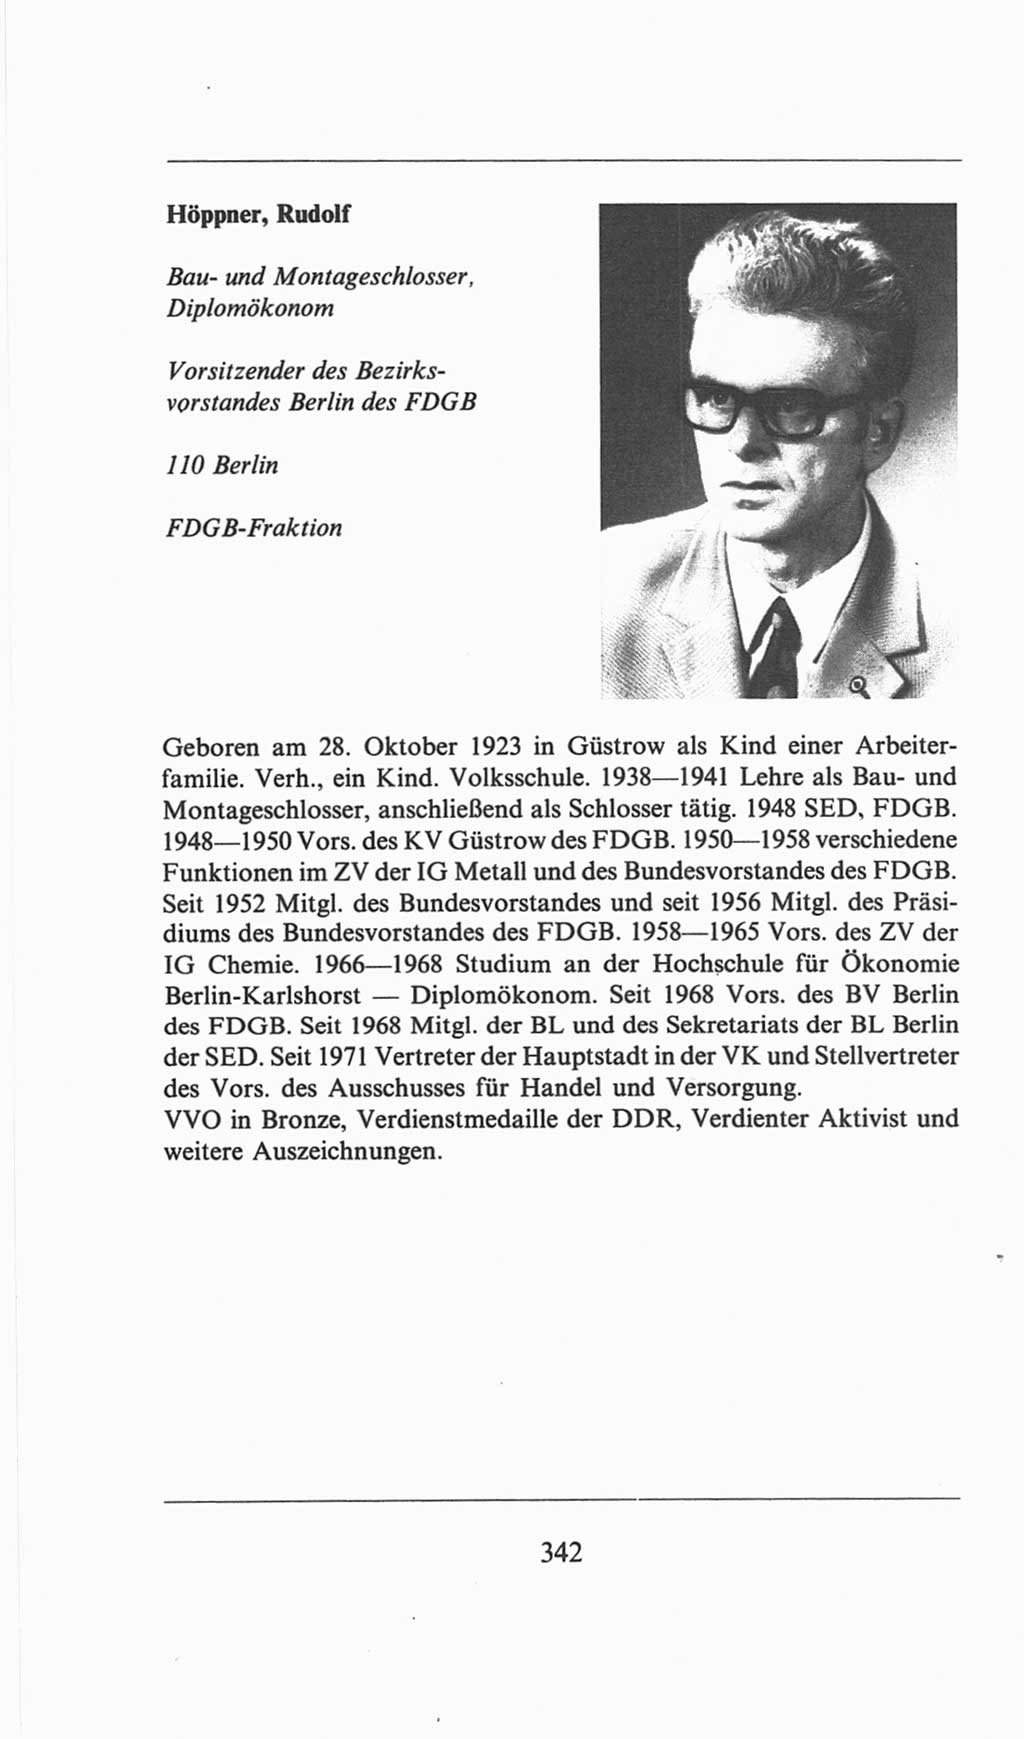 Volkskammer (VK) der Deutschen Demokratischen Republik (DDR), 6. Wahlperiode 1971-1976, Seite 342 (VK. DDR 6. WP. 1971-1976, S. 342)